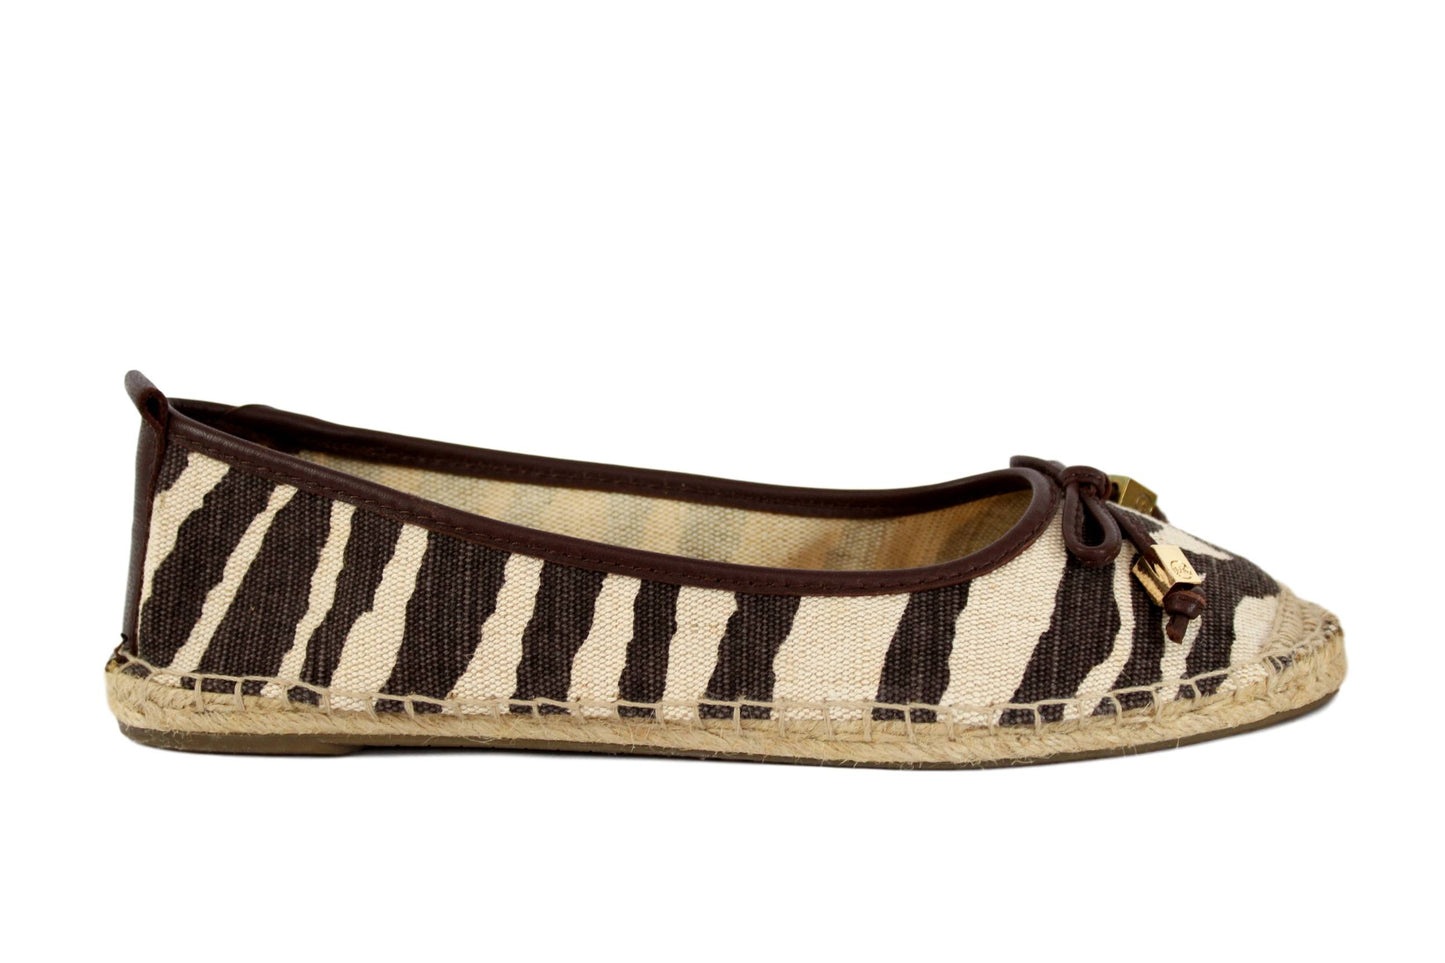 Michael Kors Canvas Leather Beige Brown Espadrilles Flat Shoes